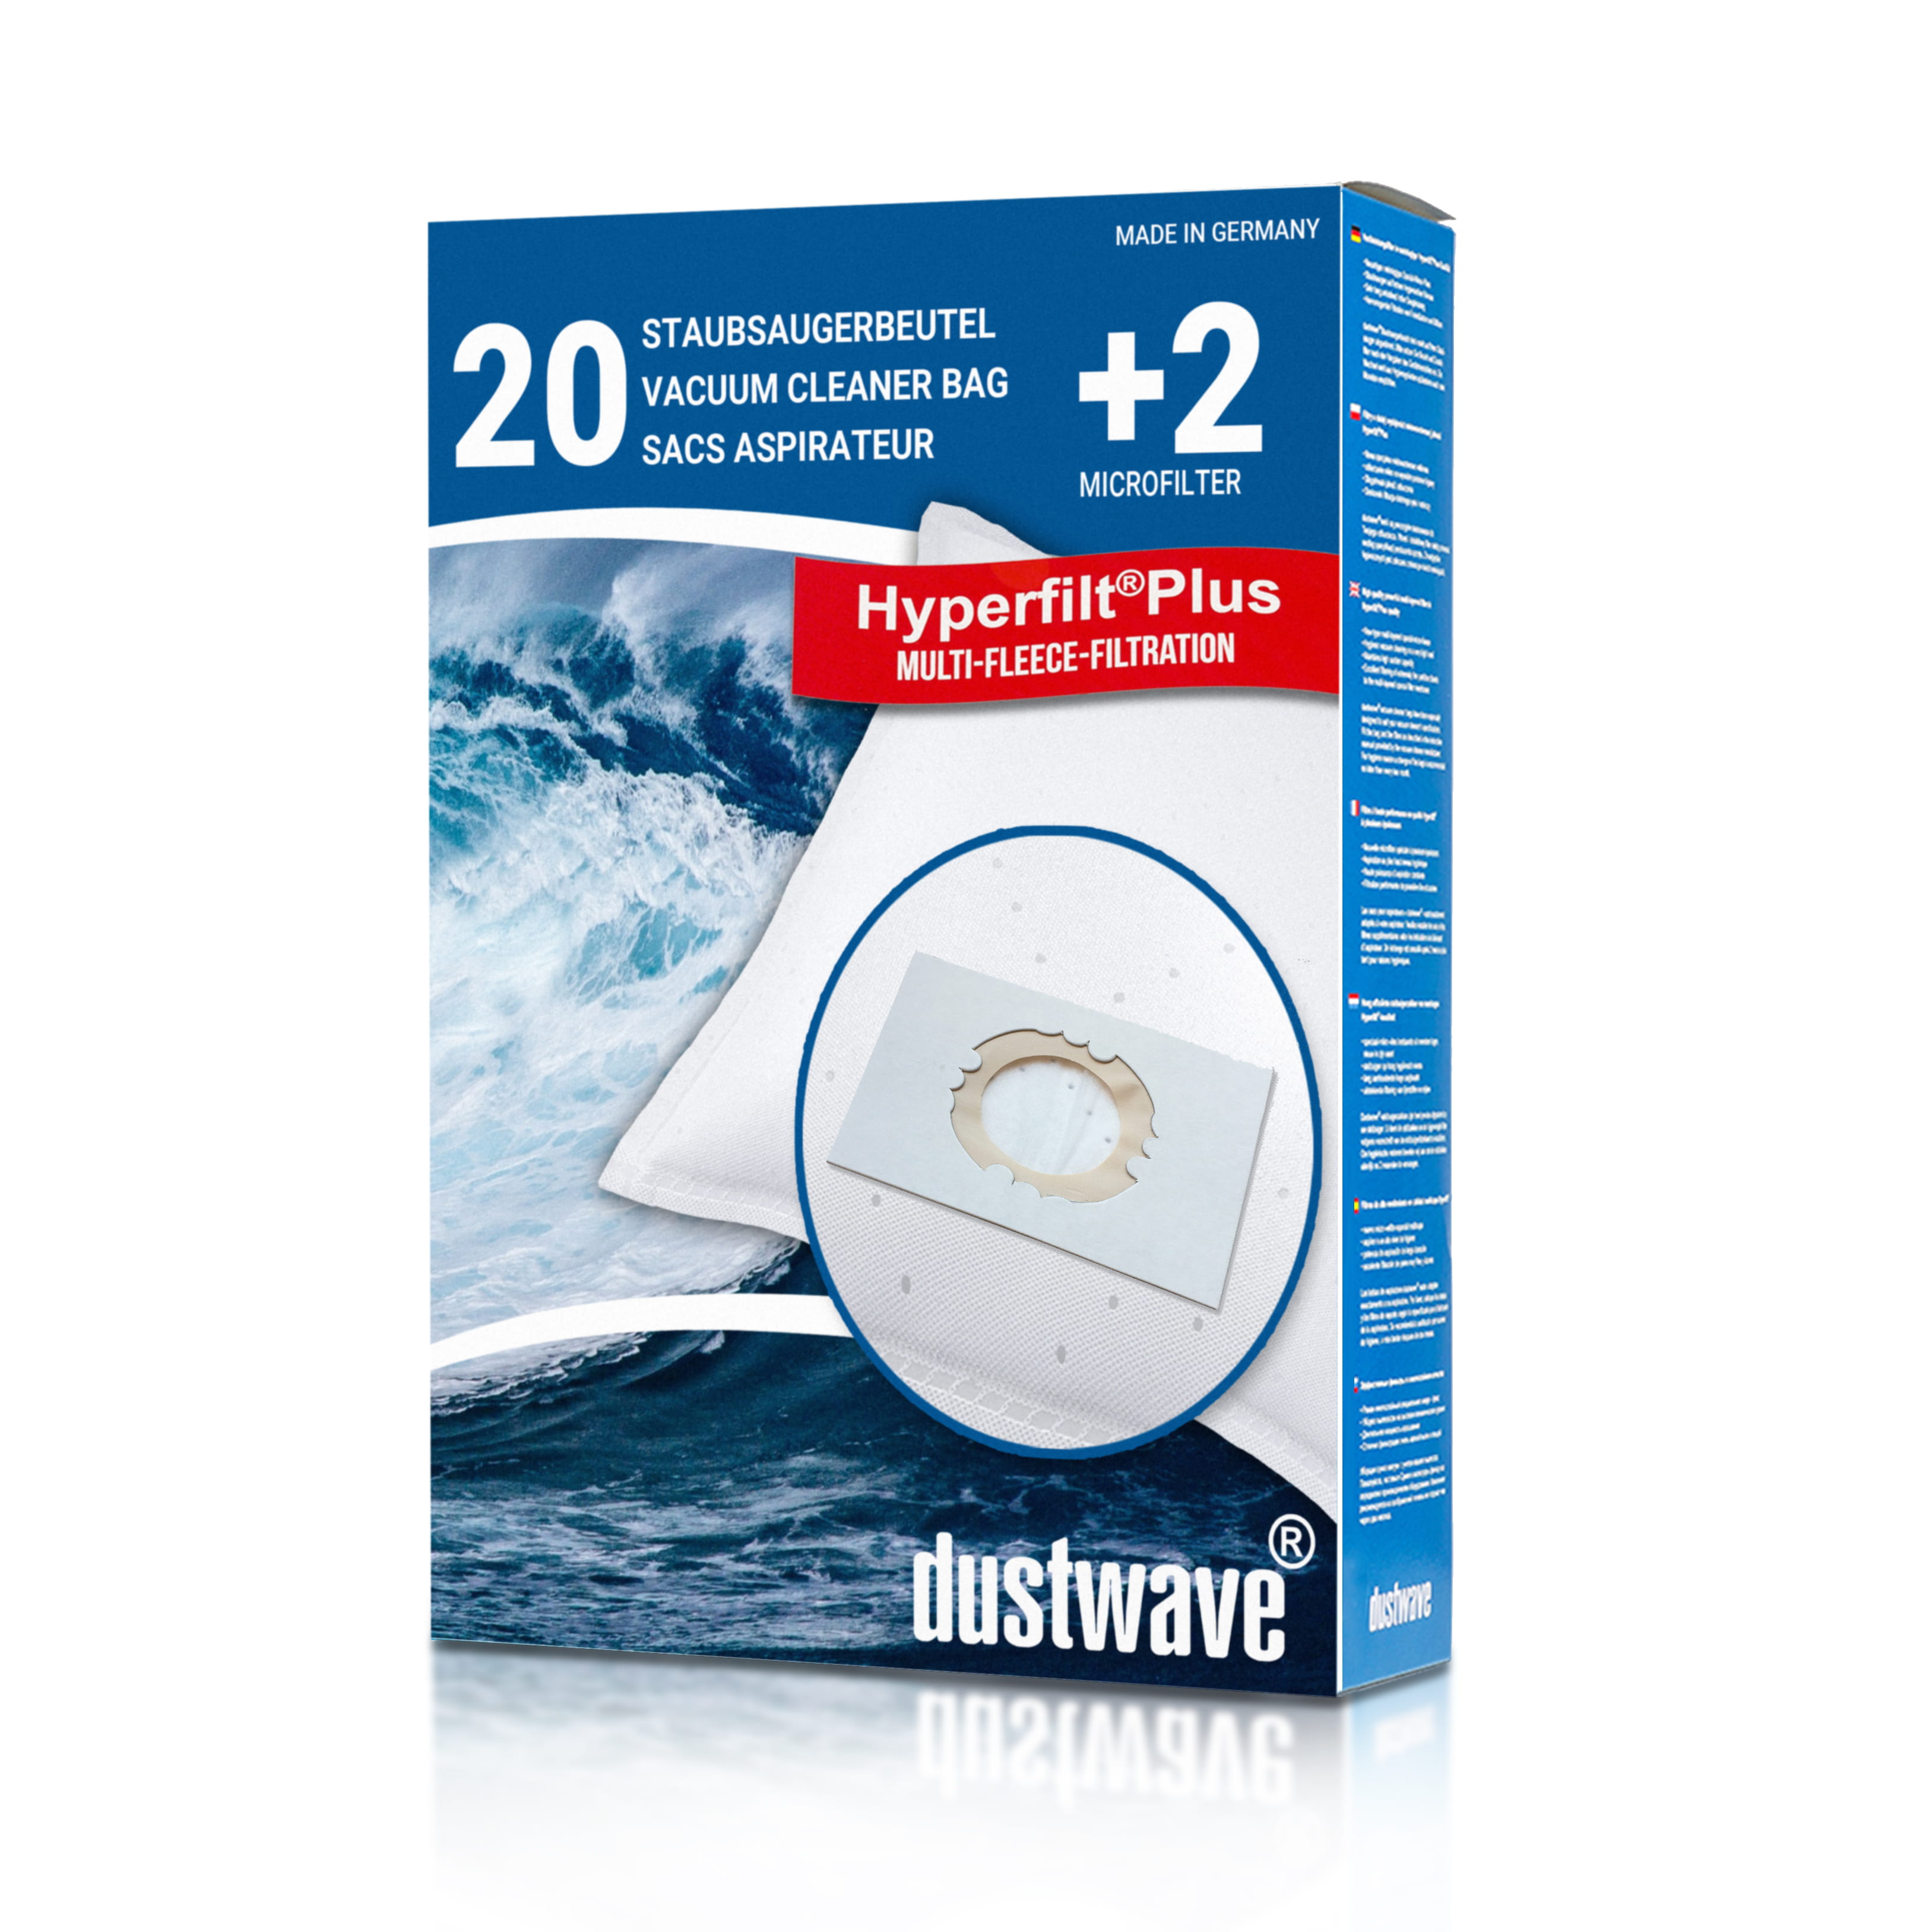 Dustwave® 20 Staubsaugerbeutel für Hoover BD SX2045 011 - hocheffizient, mehrlagiges Mikrovlies mit Hygieneverschluss - Made in Germany